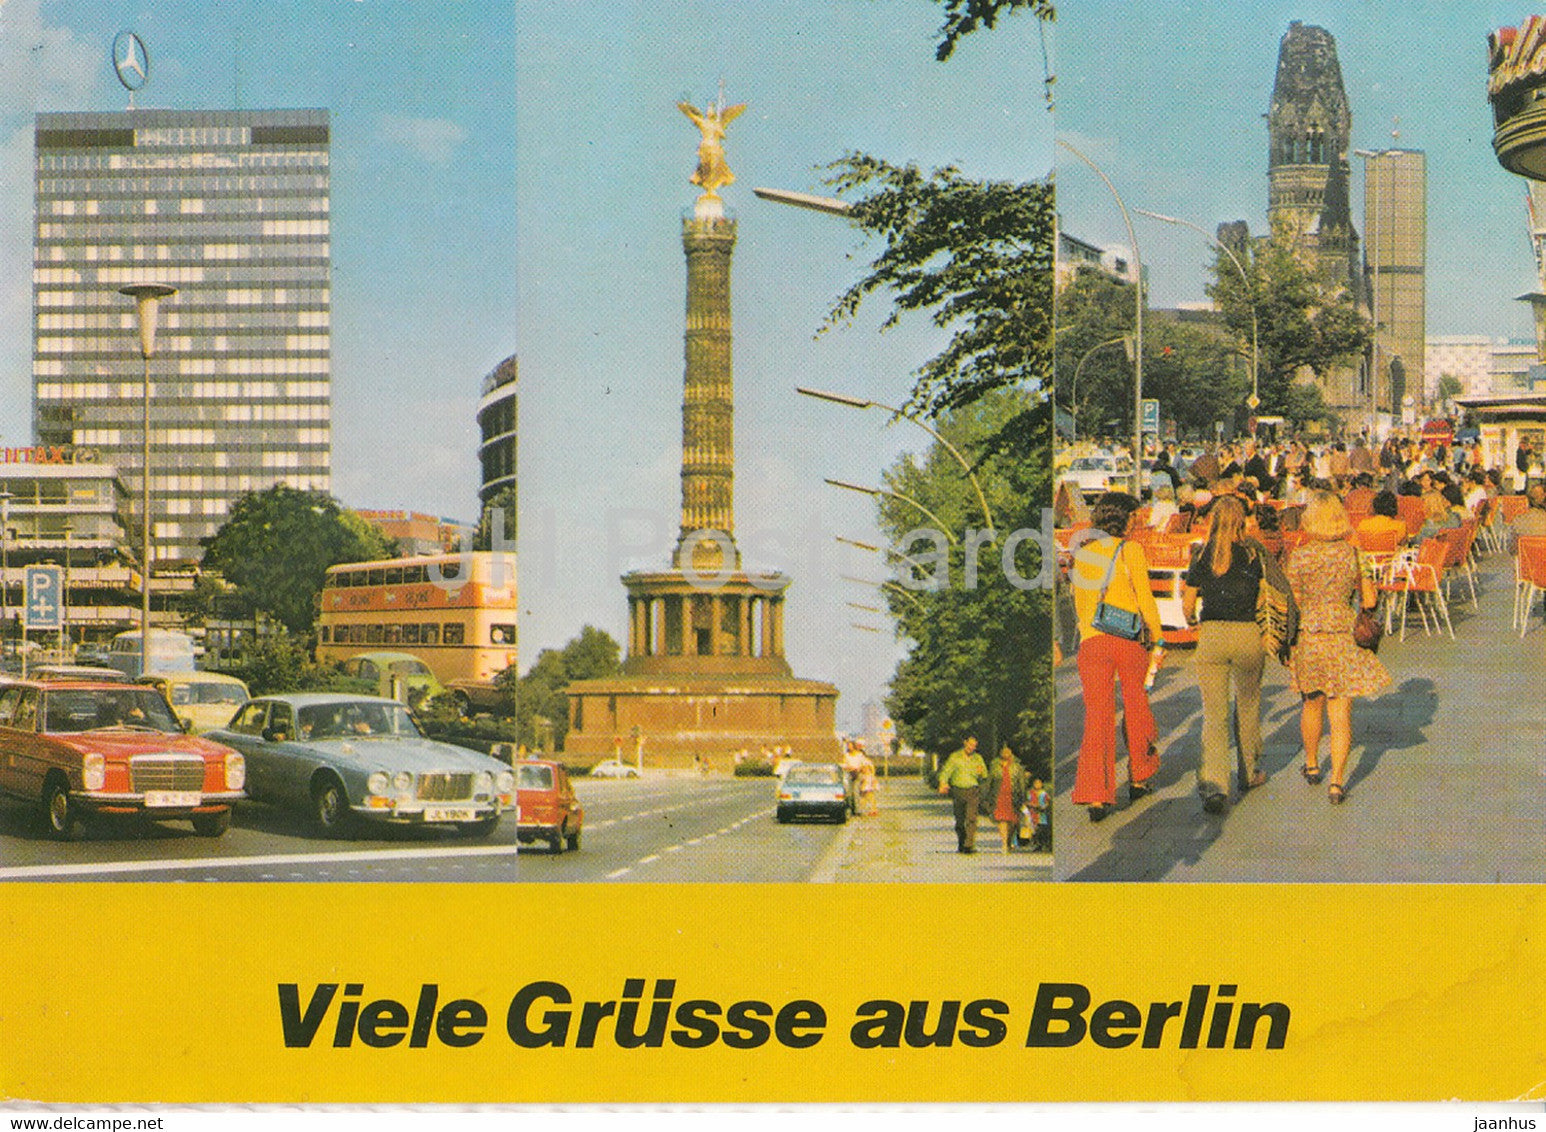 Berlin - Viele Grusse aus Berlin - car Mercedes Benz - Germany - unused - JH Postcards